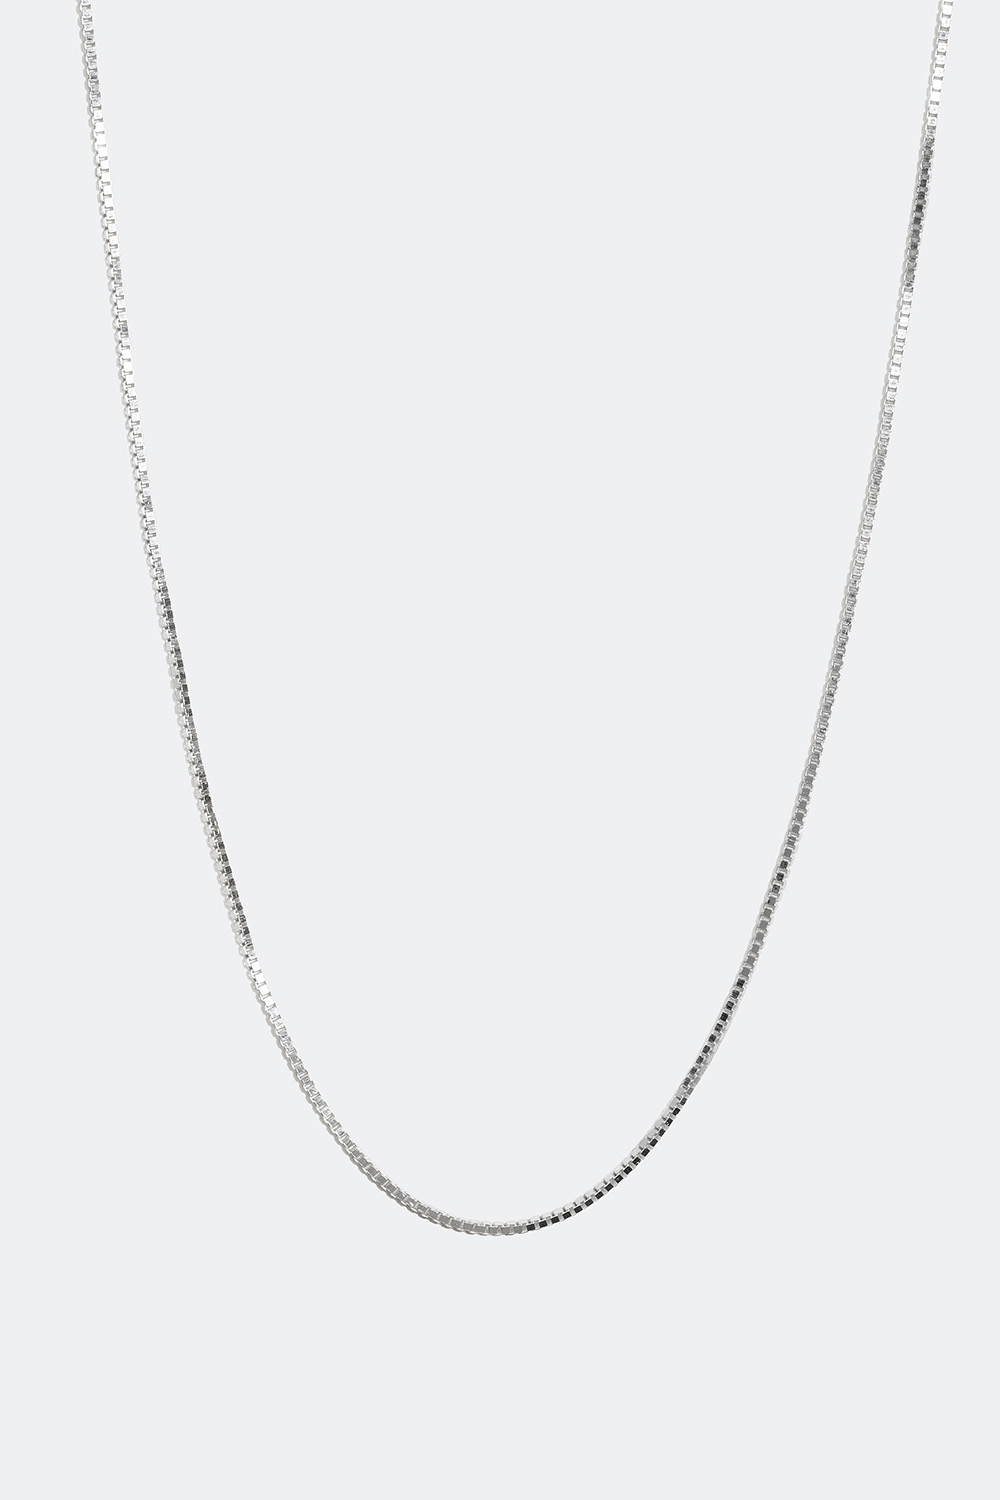 Venetiansk halskjede i ekte sølv, 45 cm i gruppen Ekte sølv / Sølvhalskjeder / Kjeder i ekte sølv hos Glitter (554000211000)